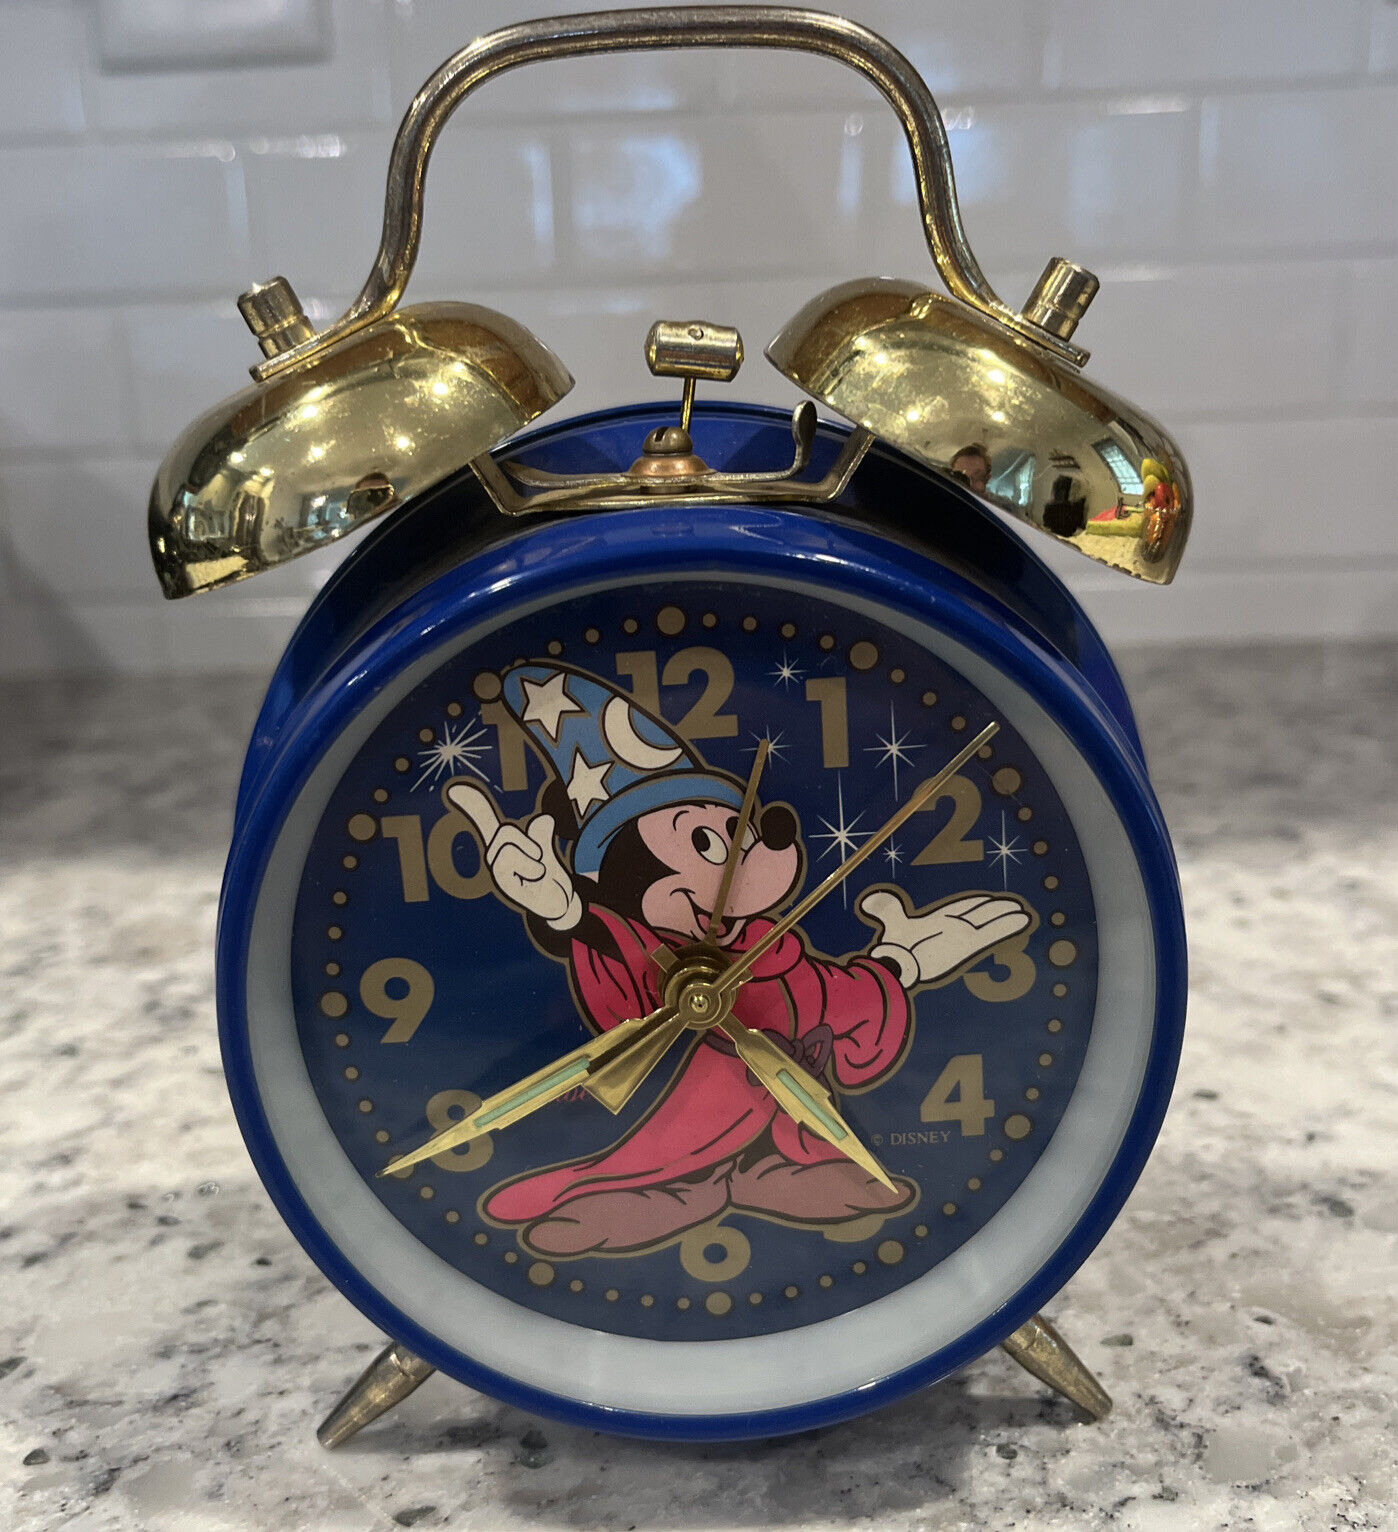 Vintage Sunbeam Disney Mickey Mouse Sorcerer Wizard Ringer Alarm Clock Works